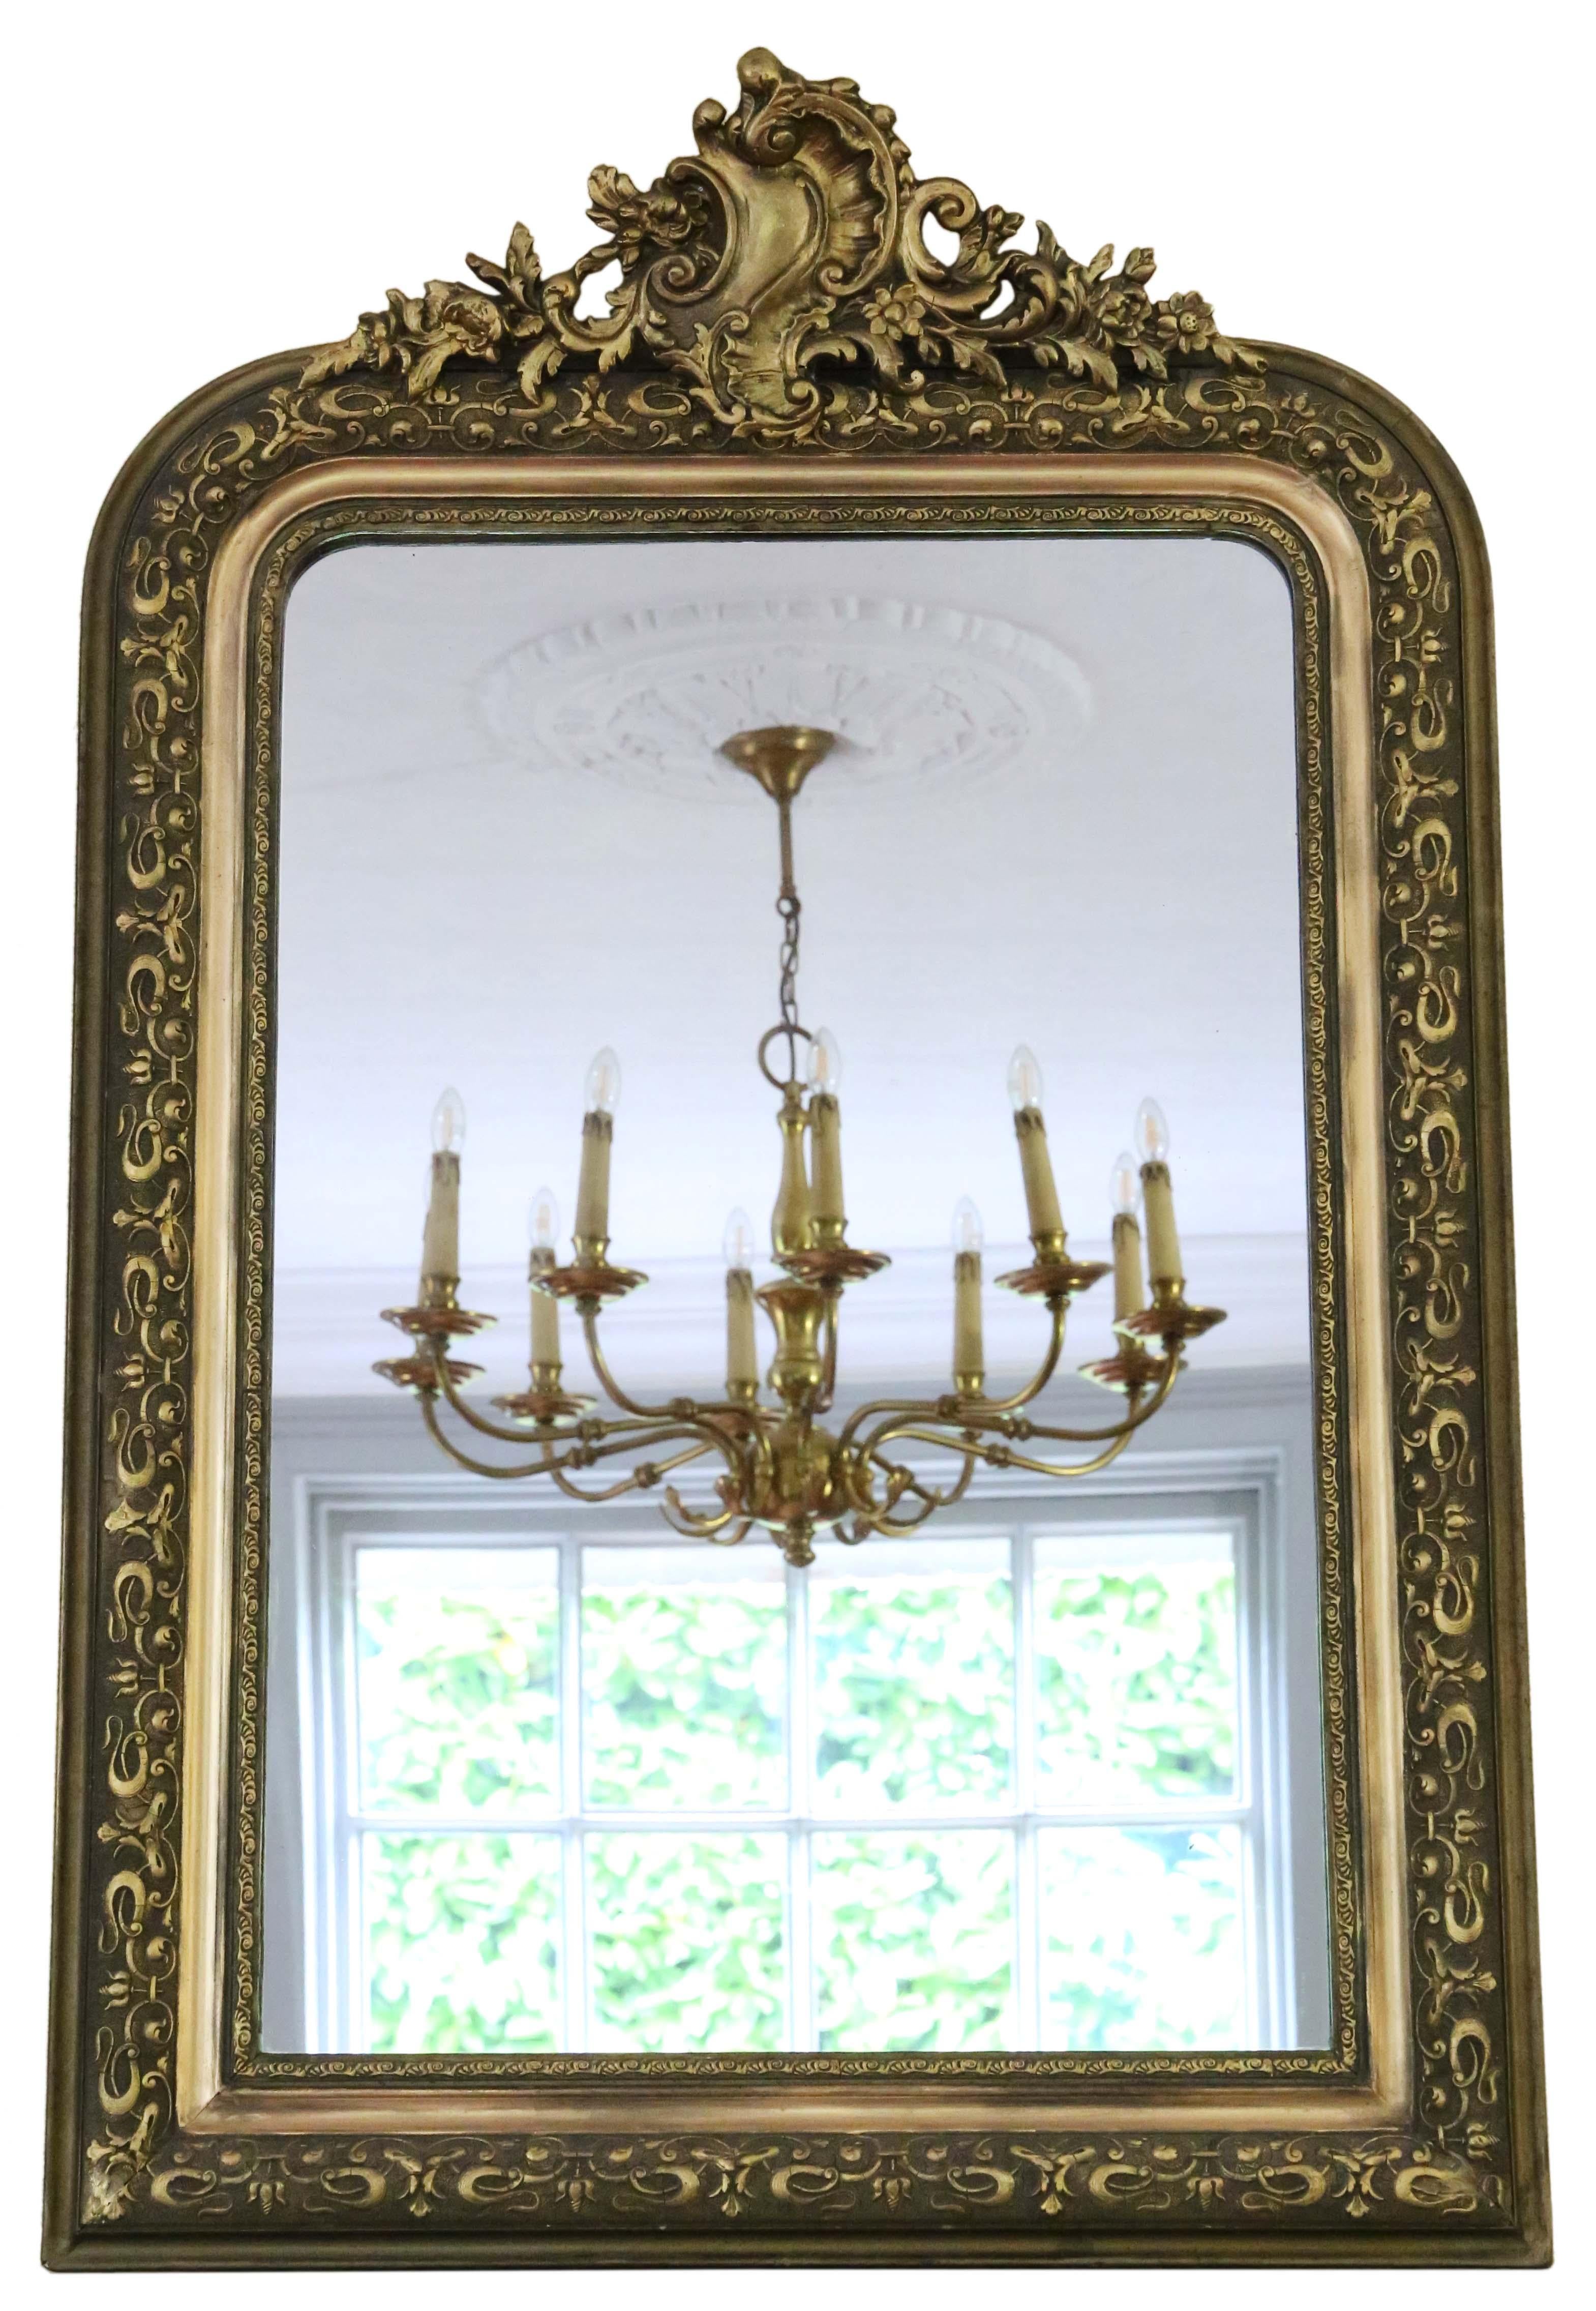 Miroir mural ou surmanteau de forme ancienne et de grande qualité, doré, du 19e siècle. Le charme et l'élégance sont au rendez-vous. Finition d'origine avec des pertes mineures. Reprise et retouches.

Il s'agit d'un miroir très rare. Un peu